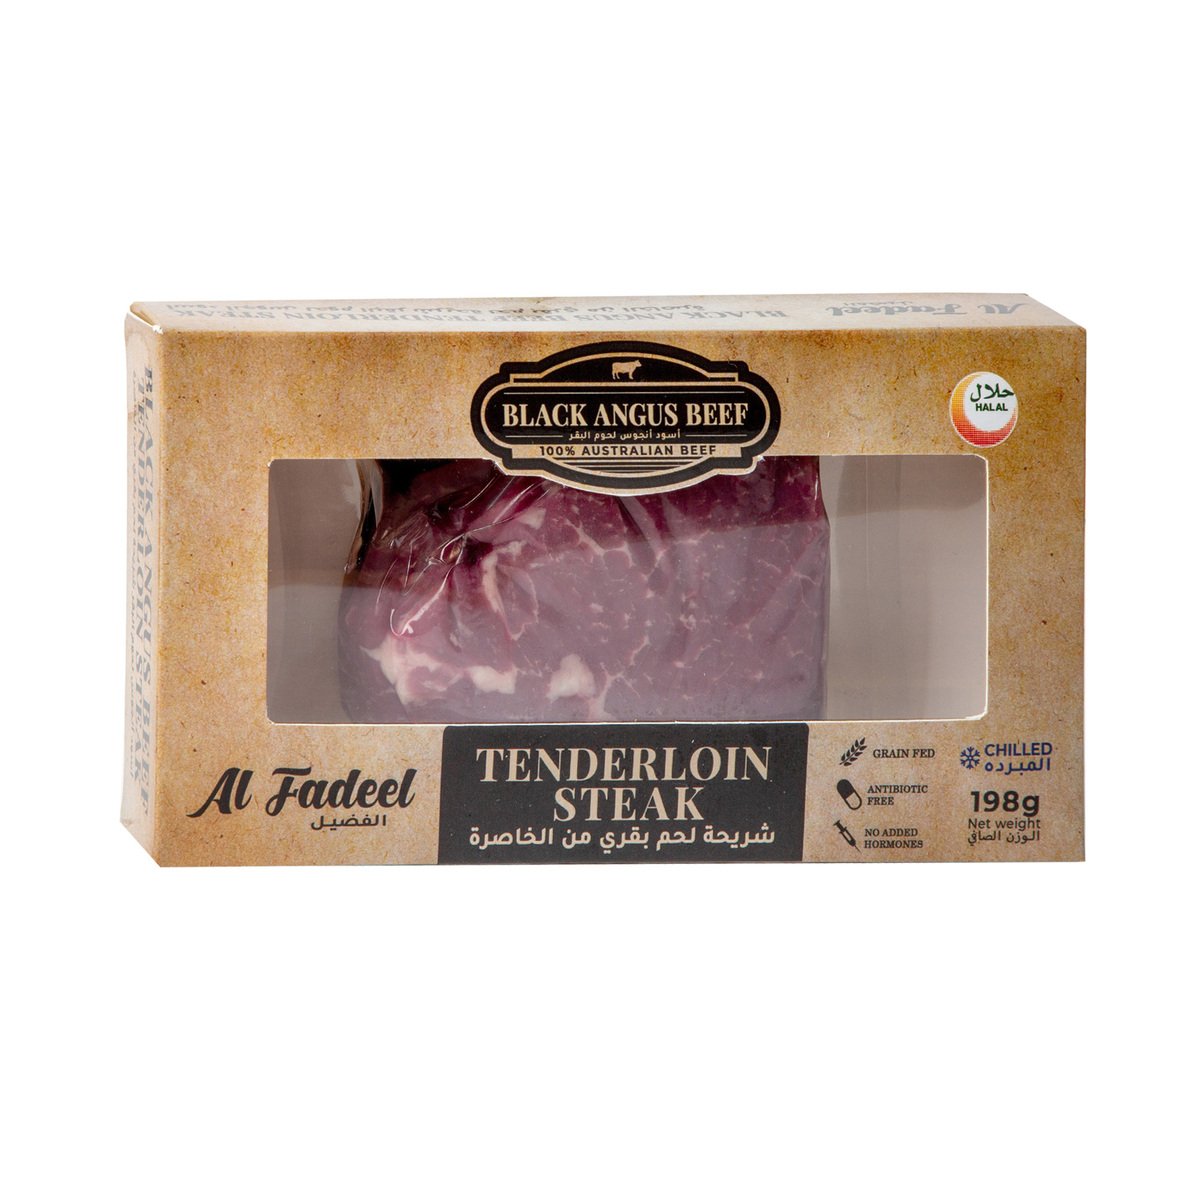 Al Fadeel Black Angus Beef Tenderloin Steak 198 g